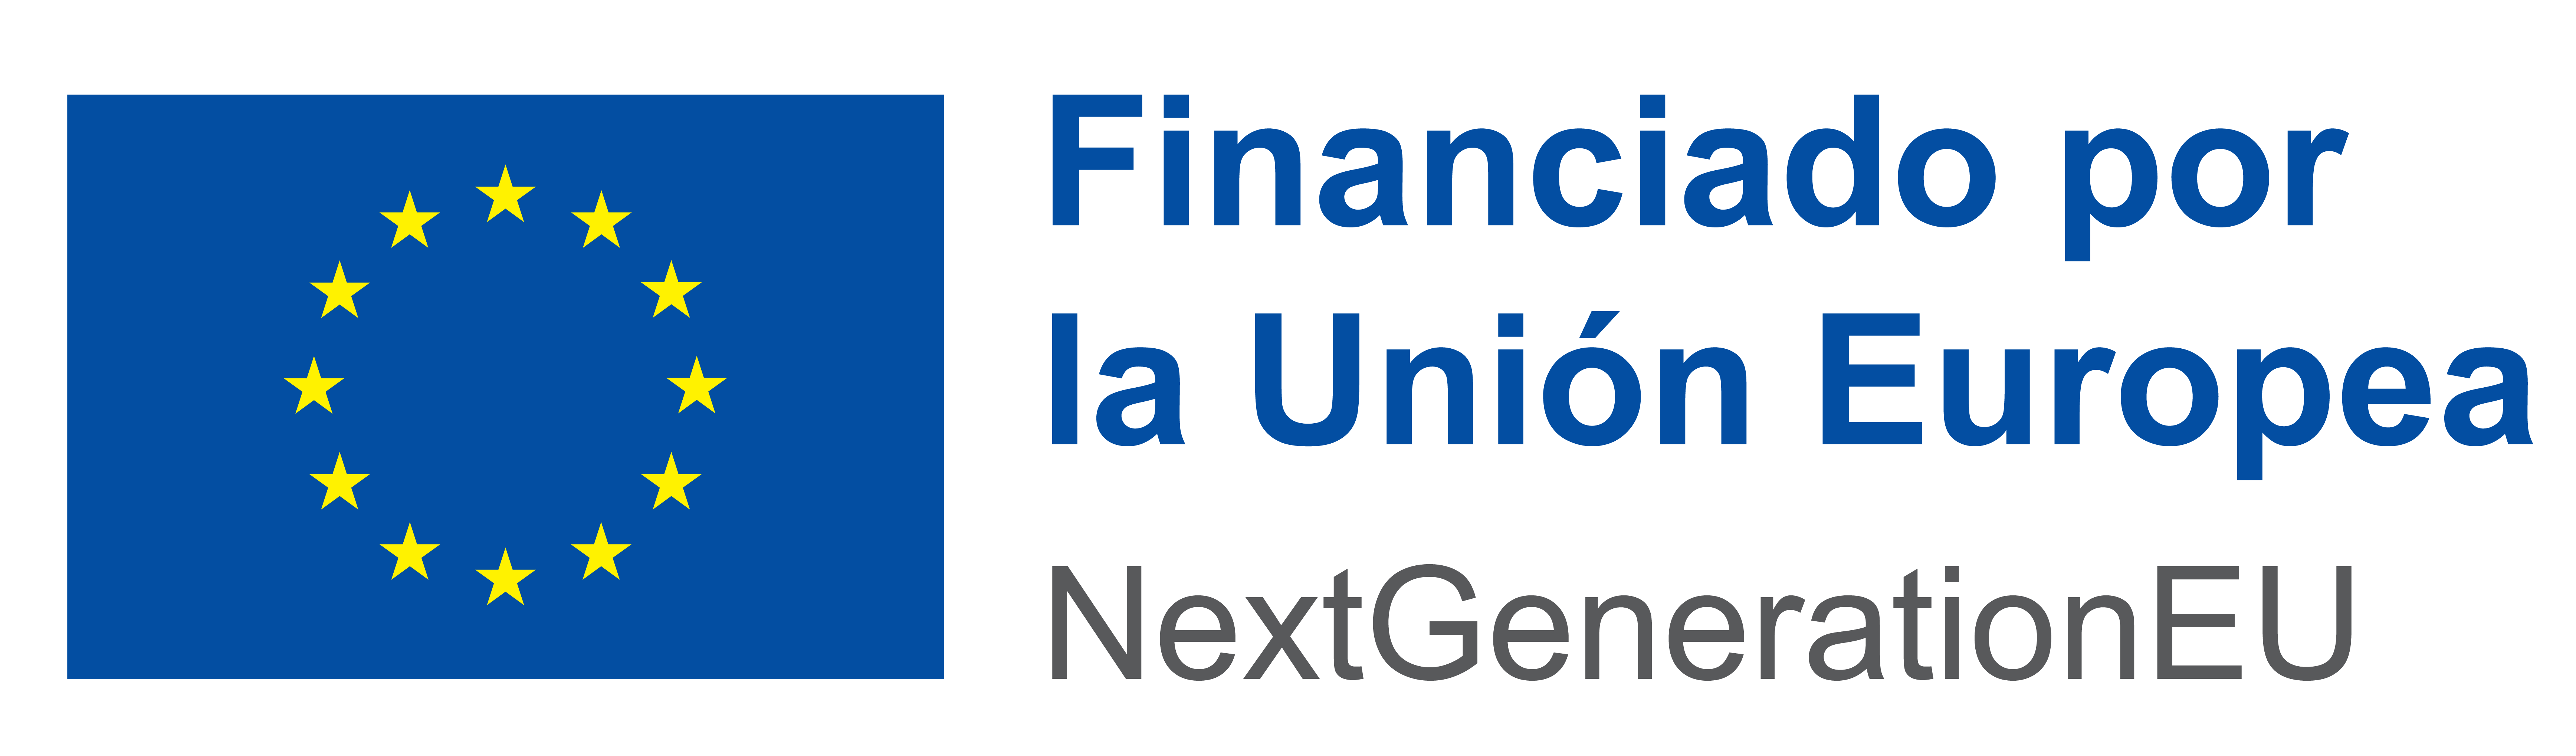 desc_Logo ES Financiado por la Uni&oacute;n Europea_POS.png